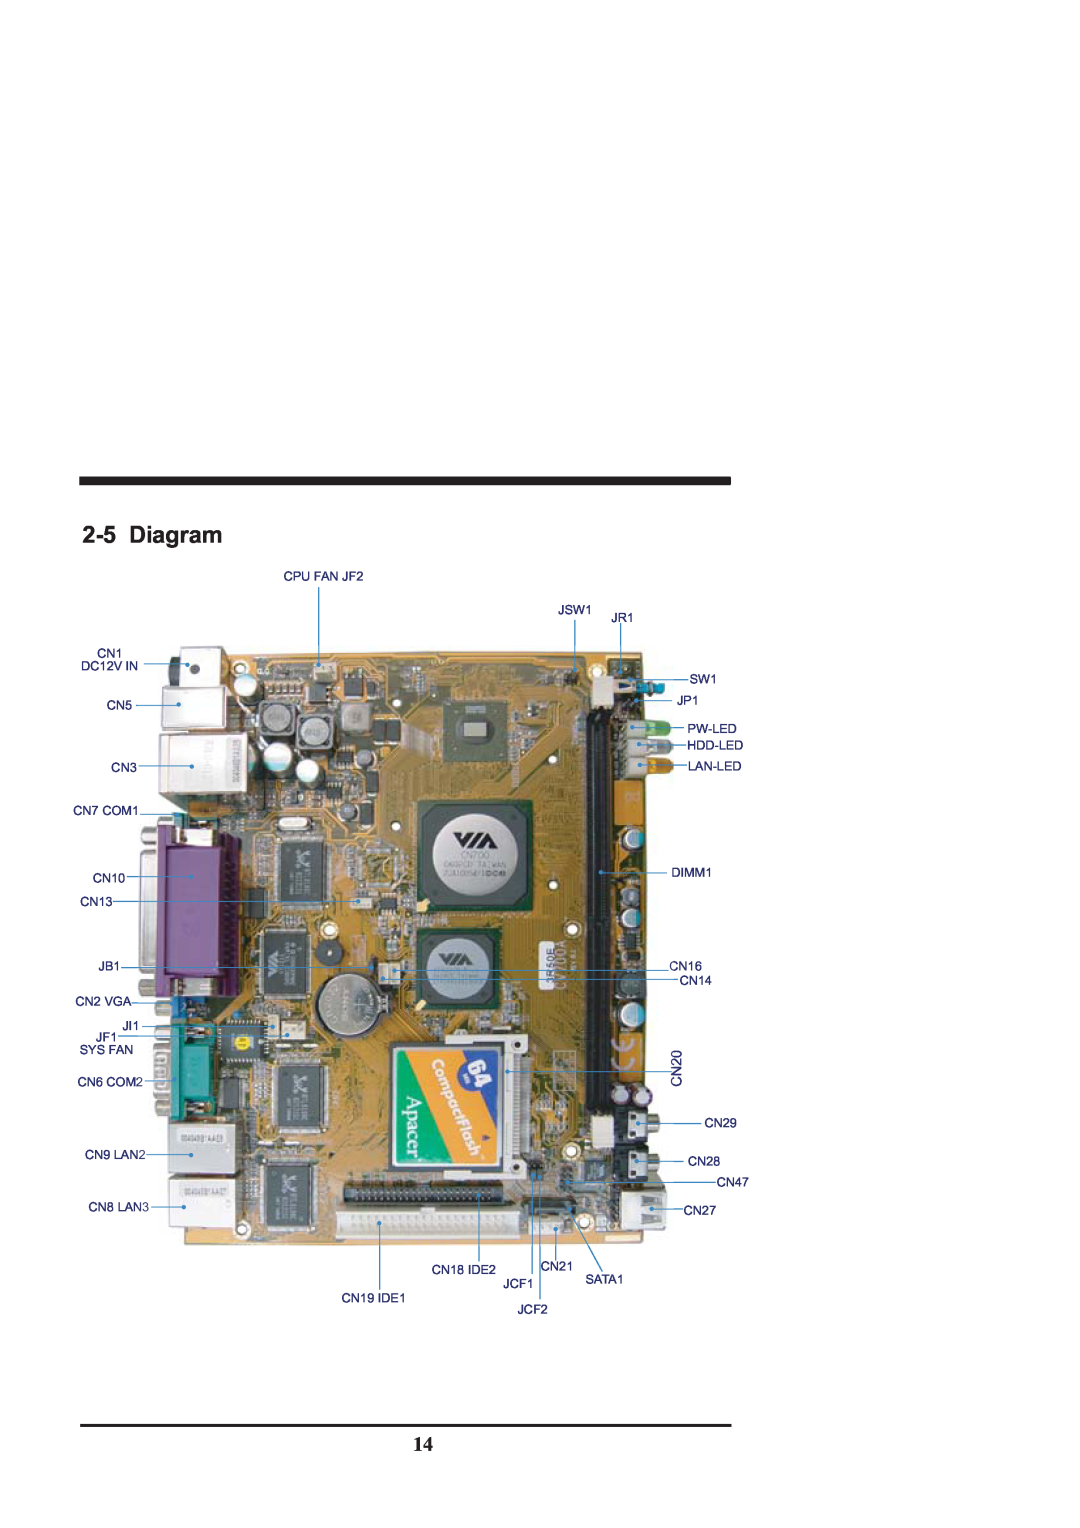 Intel CV702A, CV700A manual 2-5Diagram, CN20 